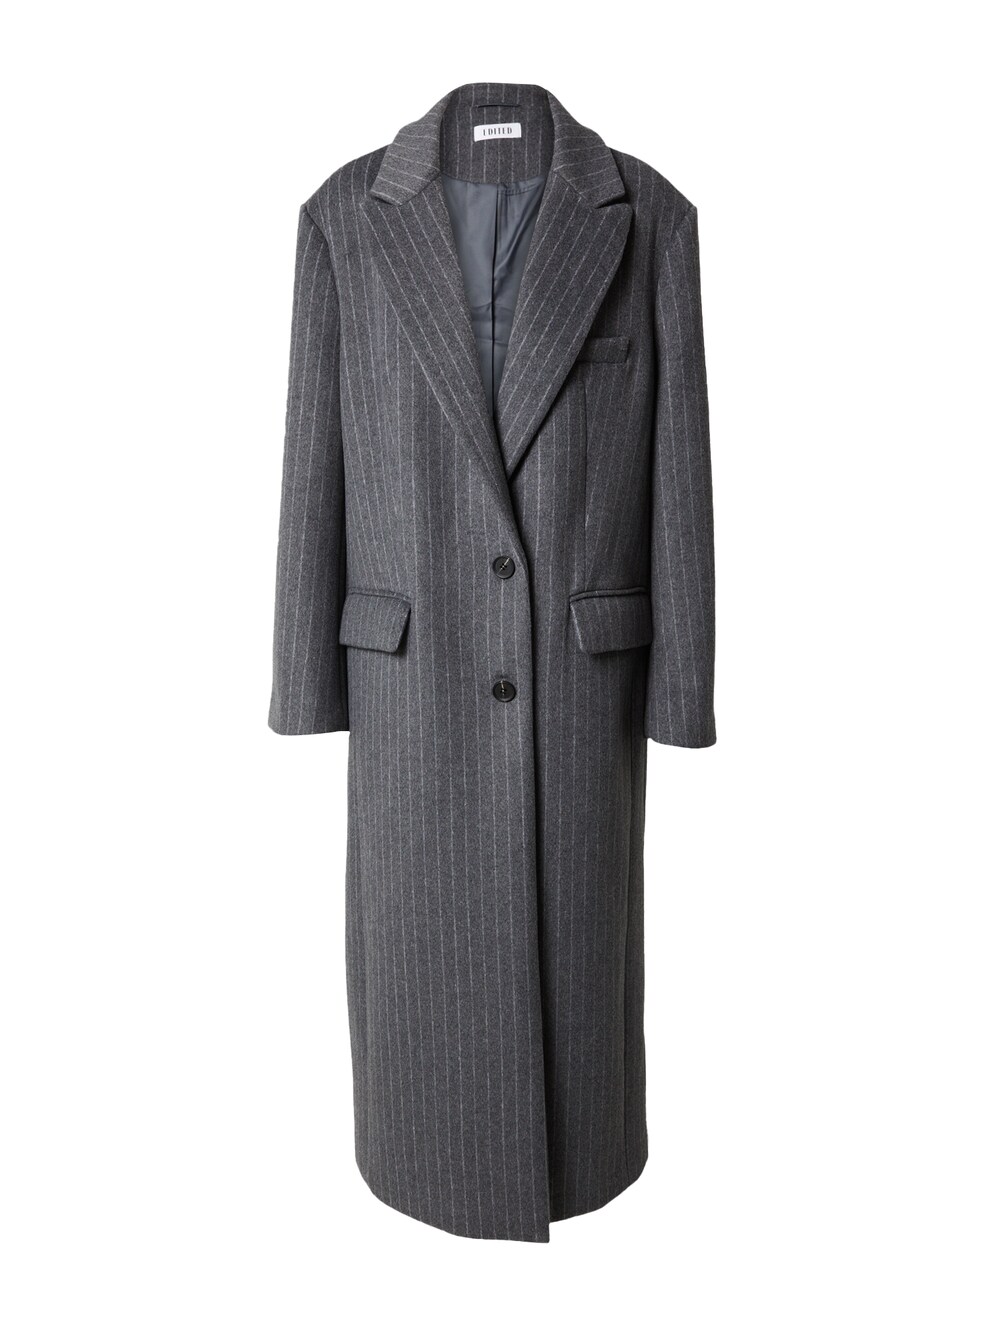 Межсезонное пальто EDITED Rylan, серый межсезонное пальто edited ekaterina пестрый серый